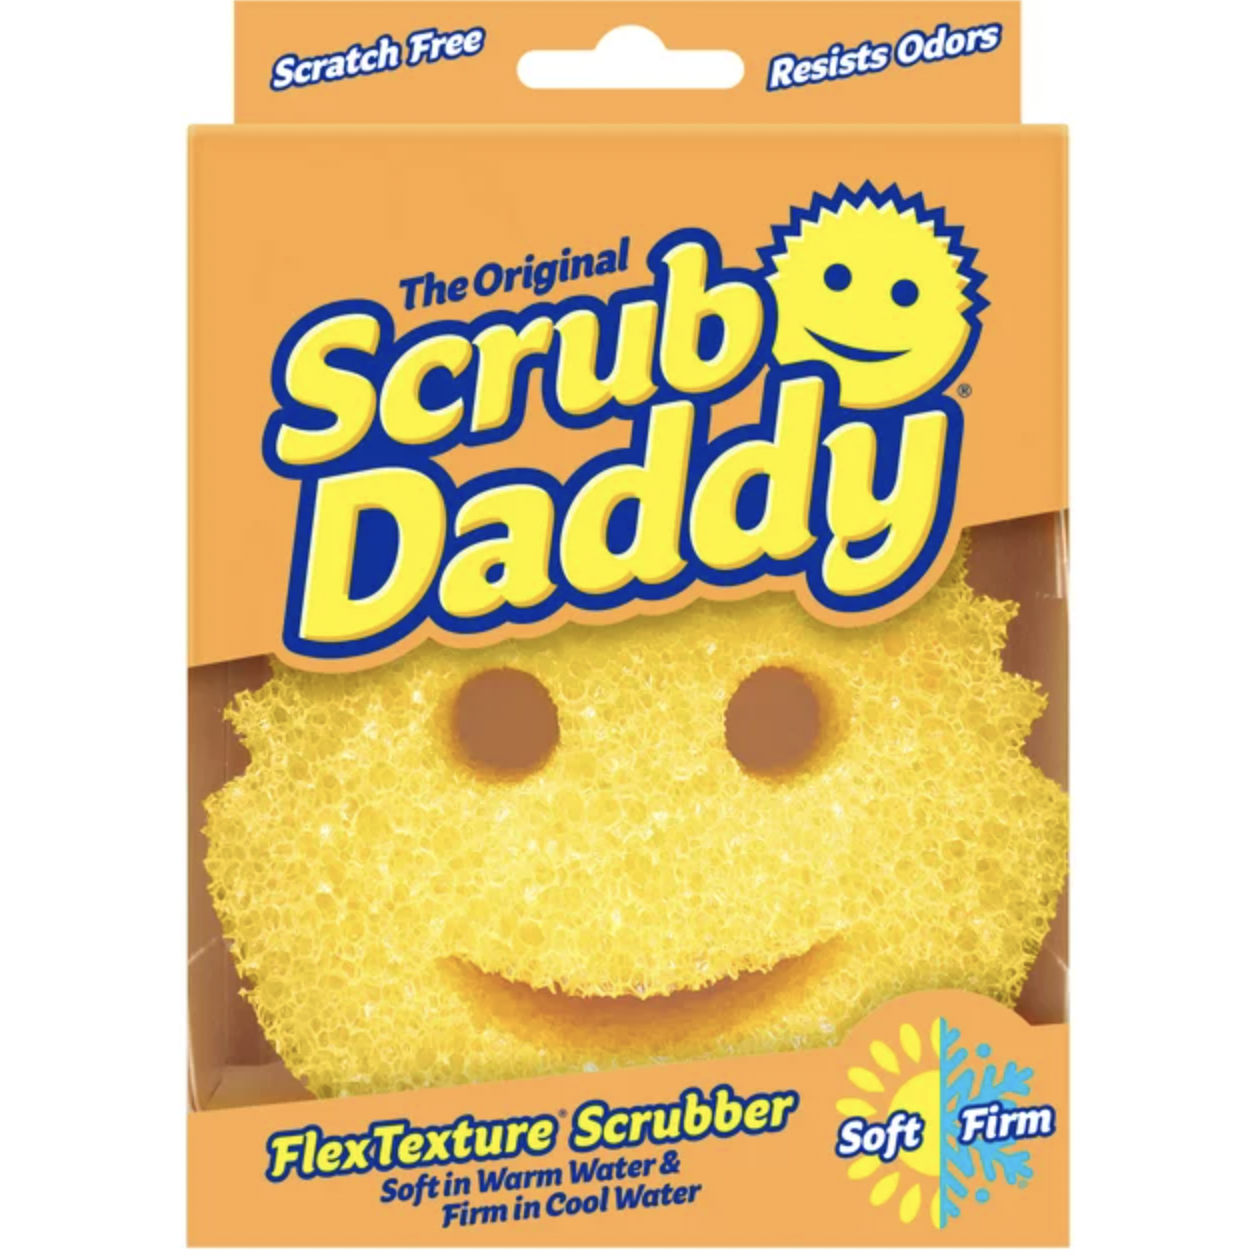 The scrub daddy